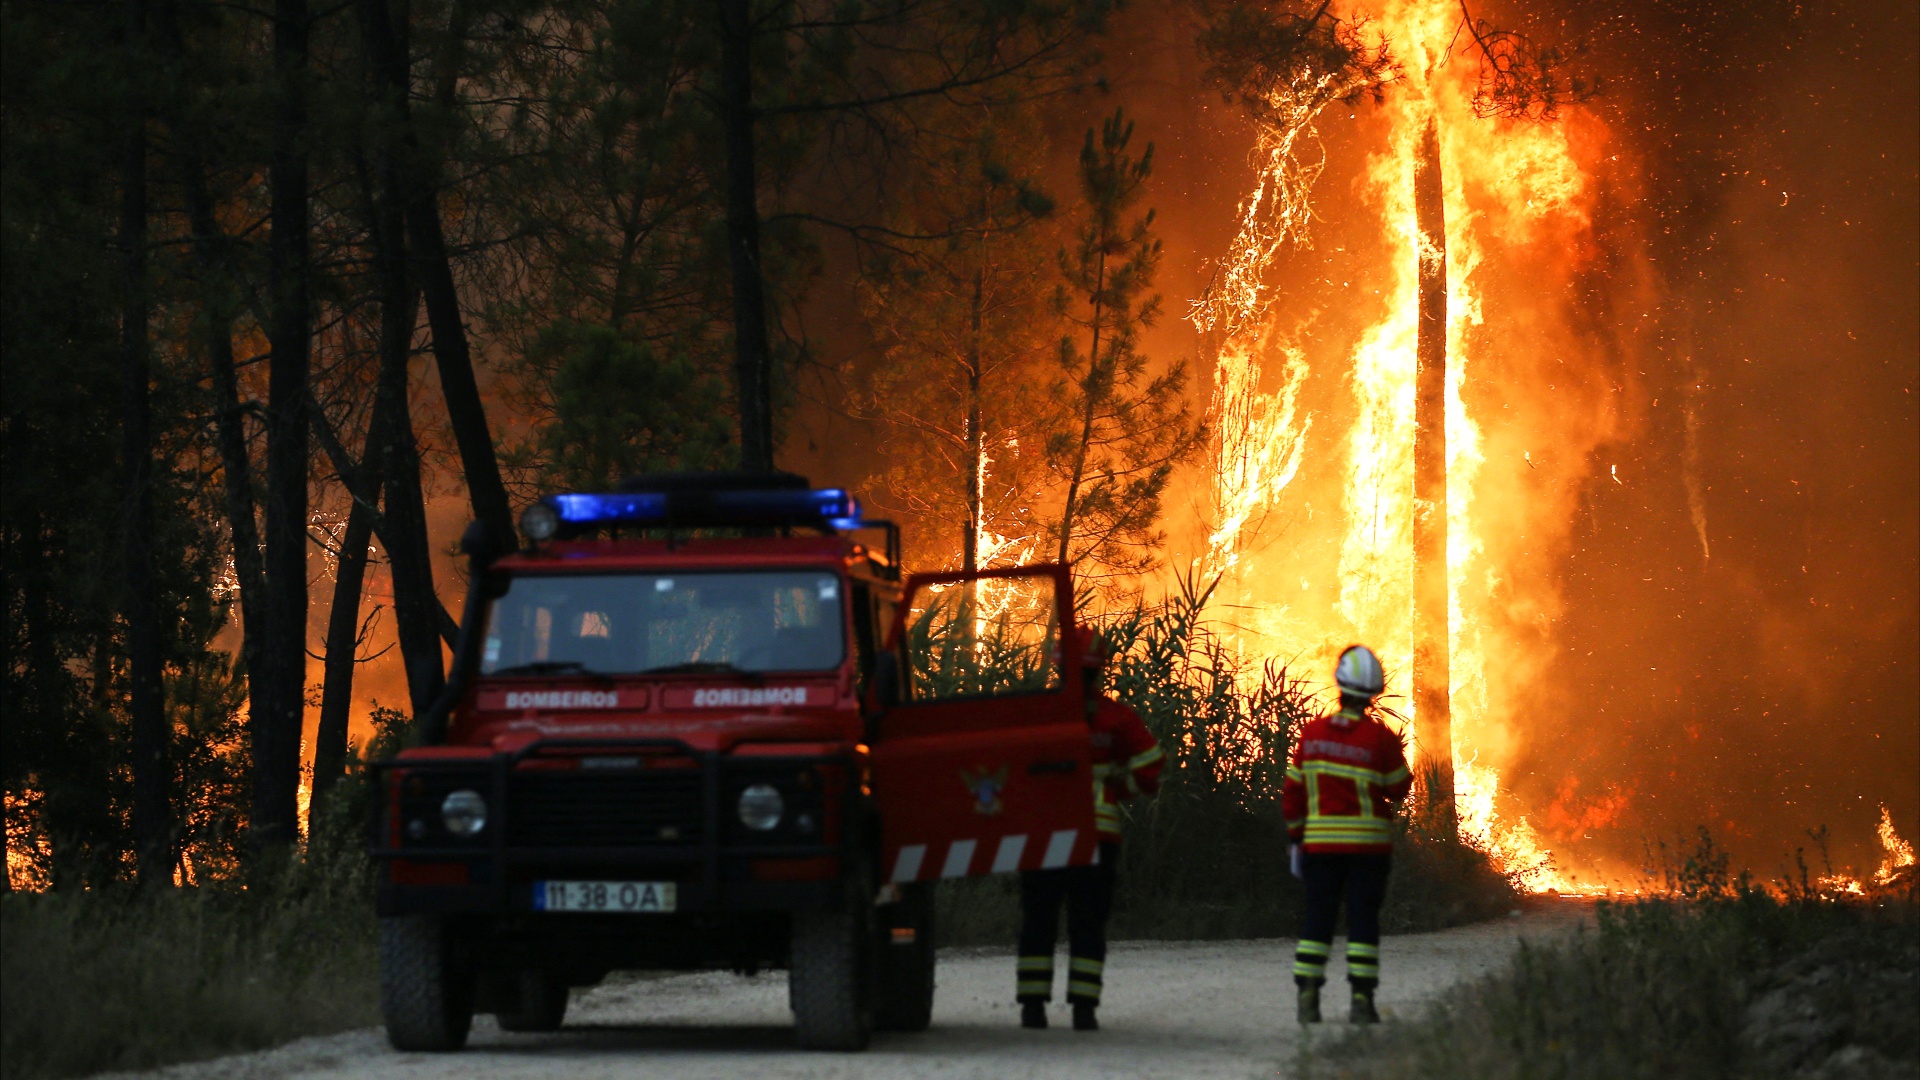 Аномальная жара вызвала пожары в Европе